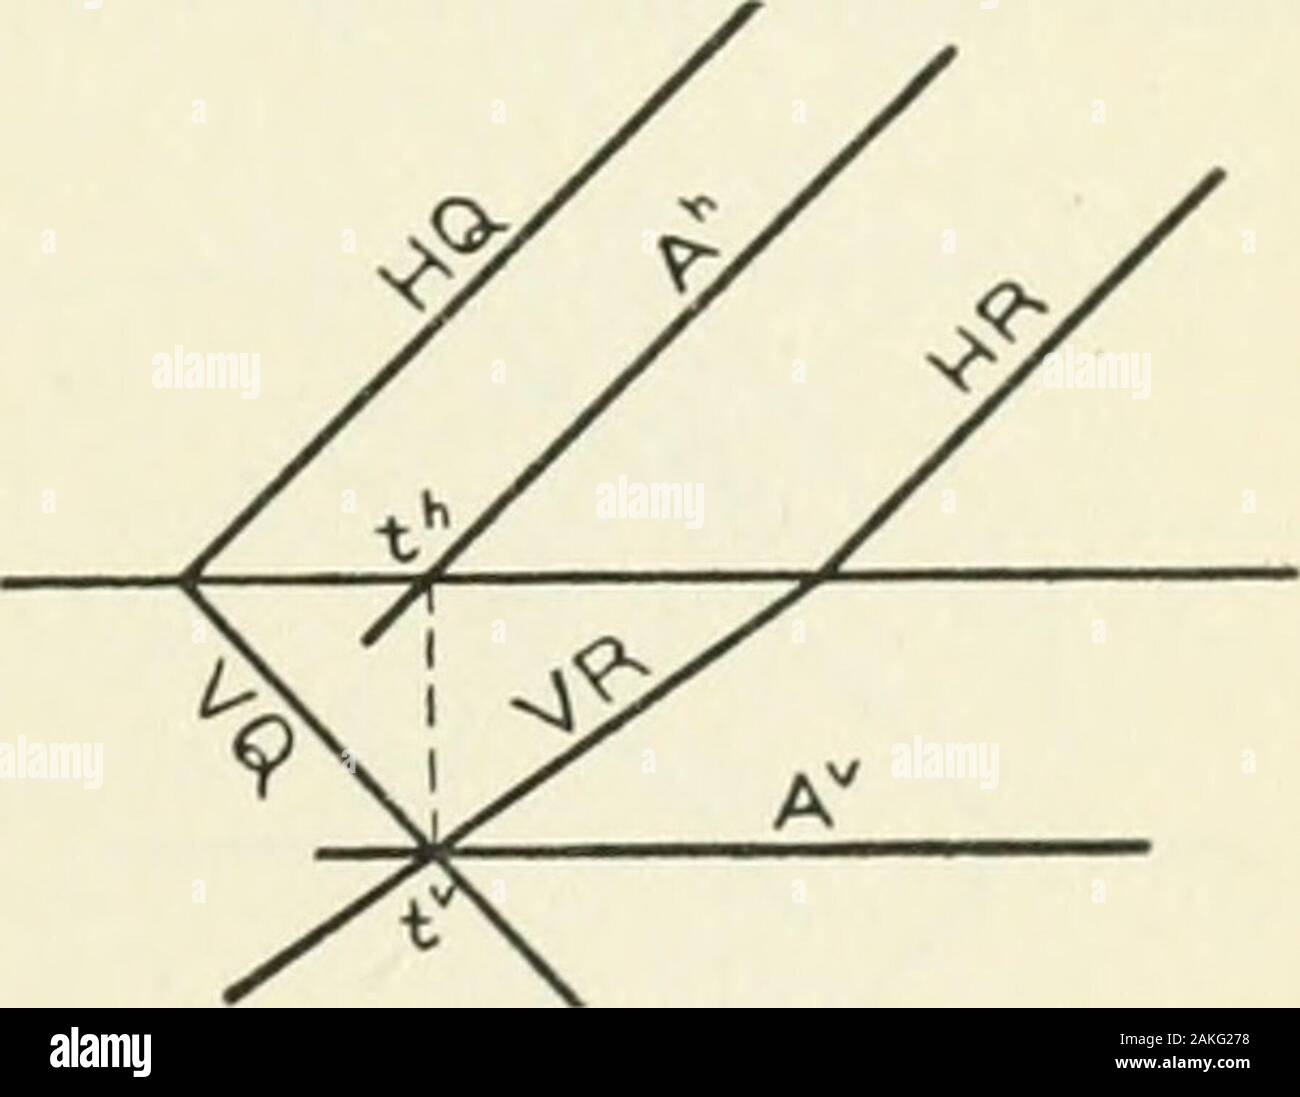 Darstellende Geometrie. Abb. 1 G 0. Abb. 167. Ein zweites Beispiel, wobei die Ebenen unterschiedlich gelegen, ist givenin Abb. 167. Der allgemeine Fall fehlschlagen, weil (a) parallele Linien; (6) Kreuzungen nicht zugänglich; c) Punkte s und t deckungsgleich. Sonderfall I. Angenommen, ein paar Spuren parallel (Abb. 168). Lassen Sie Q und R die Flugzeuge, die mit HQ und 11 Rparallel. Der Schnittpunkt der VQand VR gibt der F-Trace, t, der gewünschte Schnittlinie A. Betrachten die Flugzeuge Q-, R-, und //. Da die Kreuzungen von H und R withQ parallel sind, H muss beparallel auf die Schnittlinie ein, dieser Stockfoto